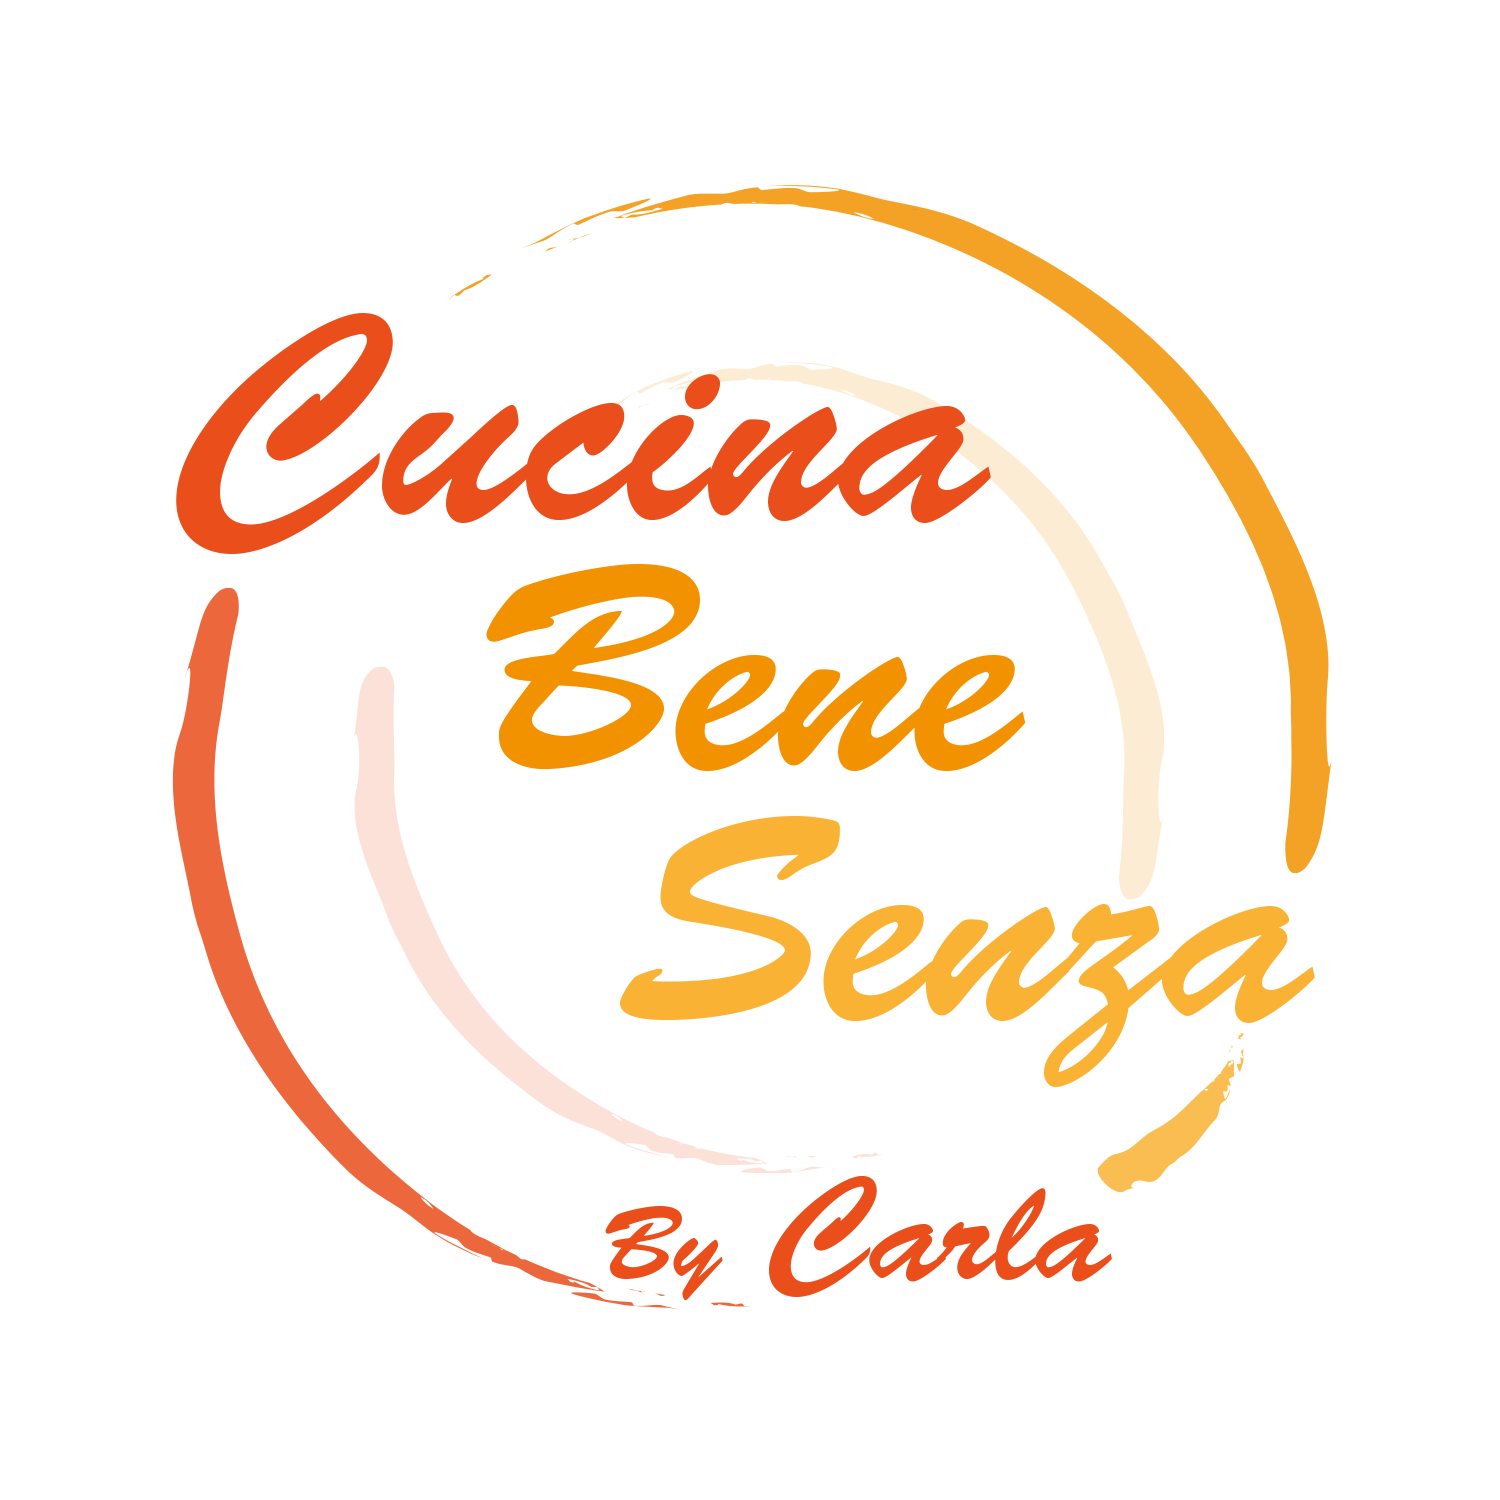 Cucina Bene Senza... (by Carla)